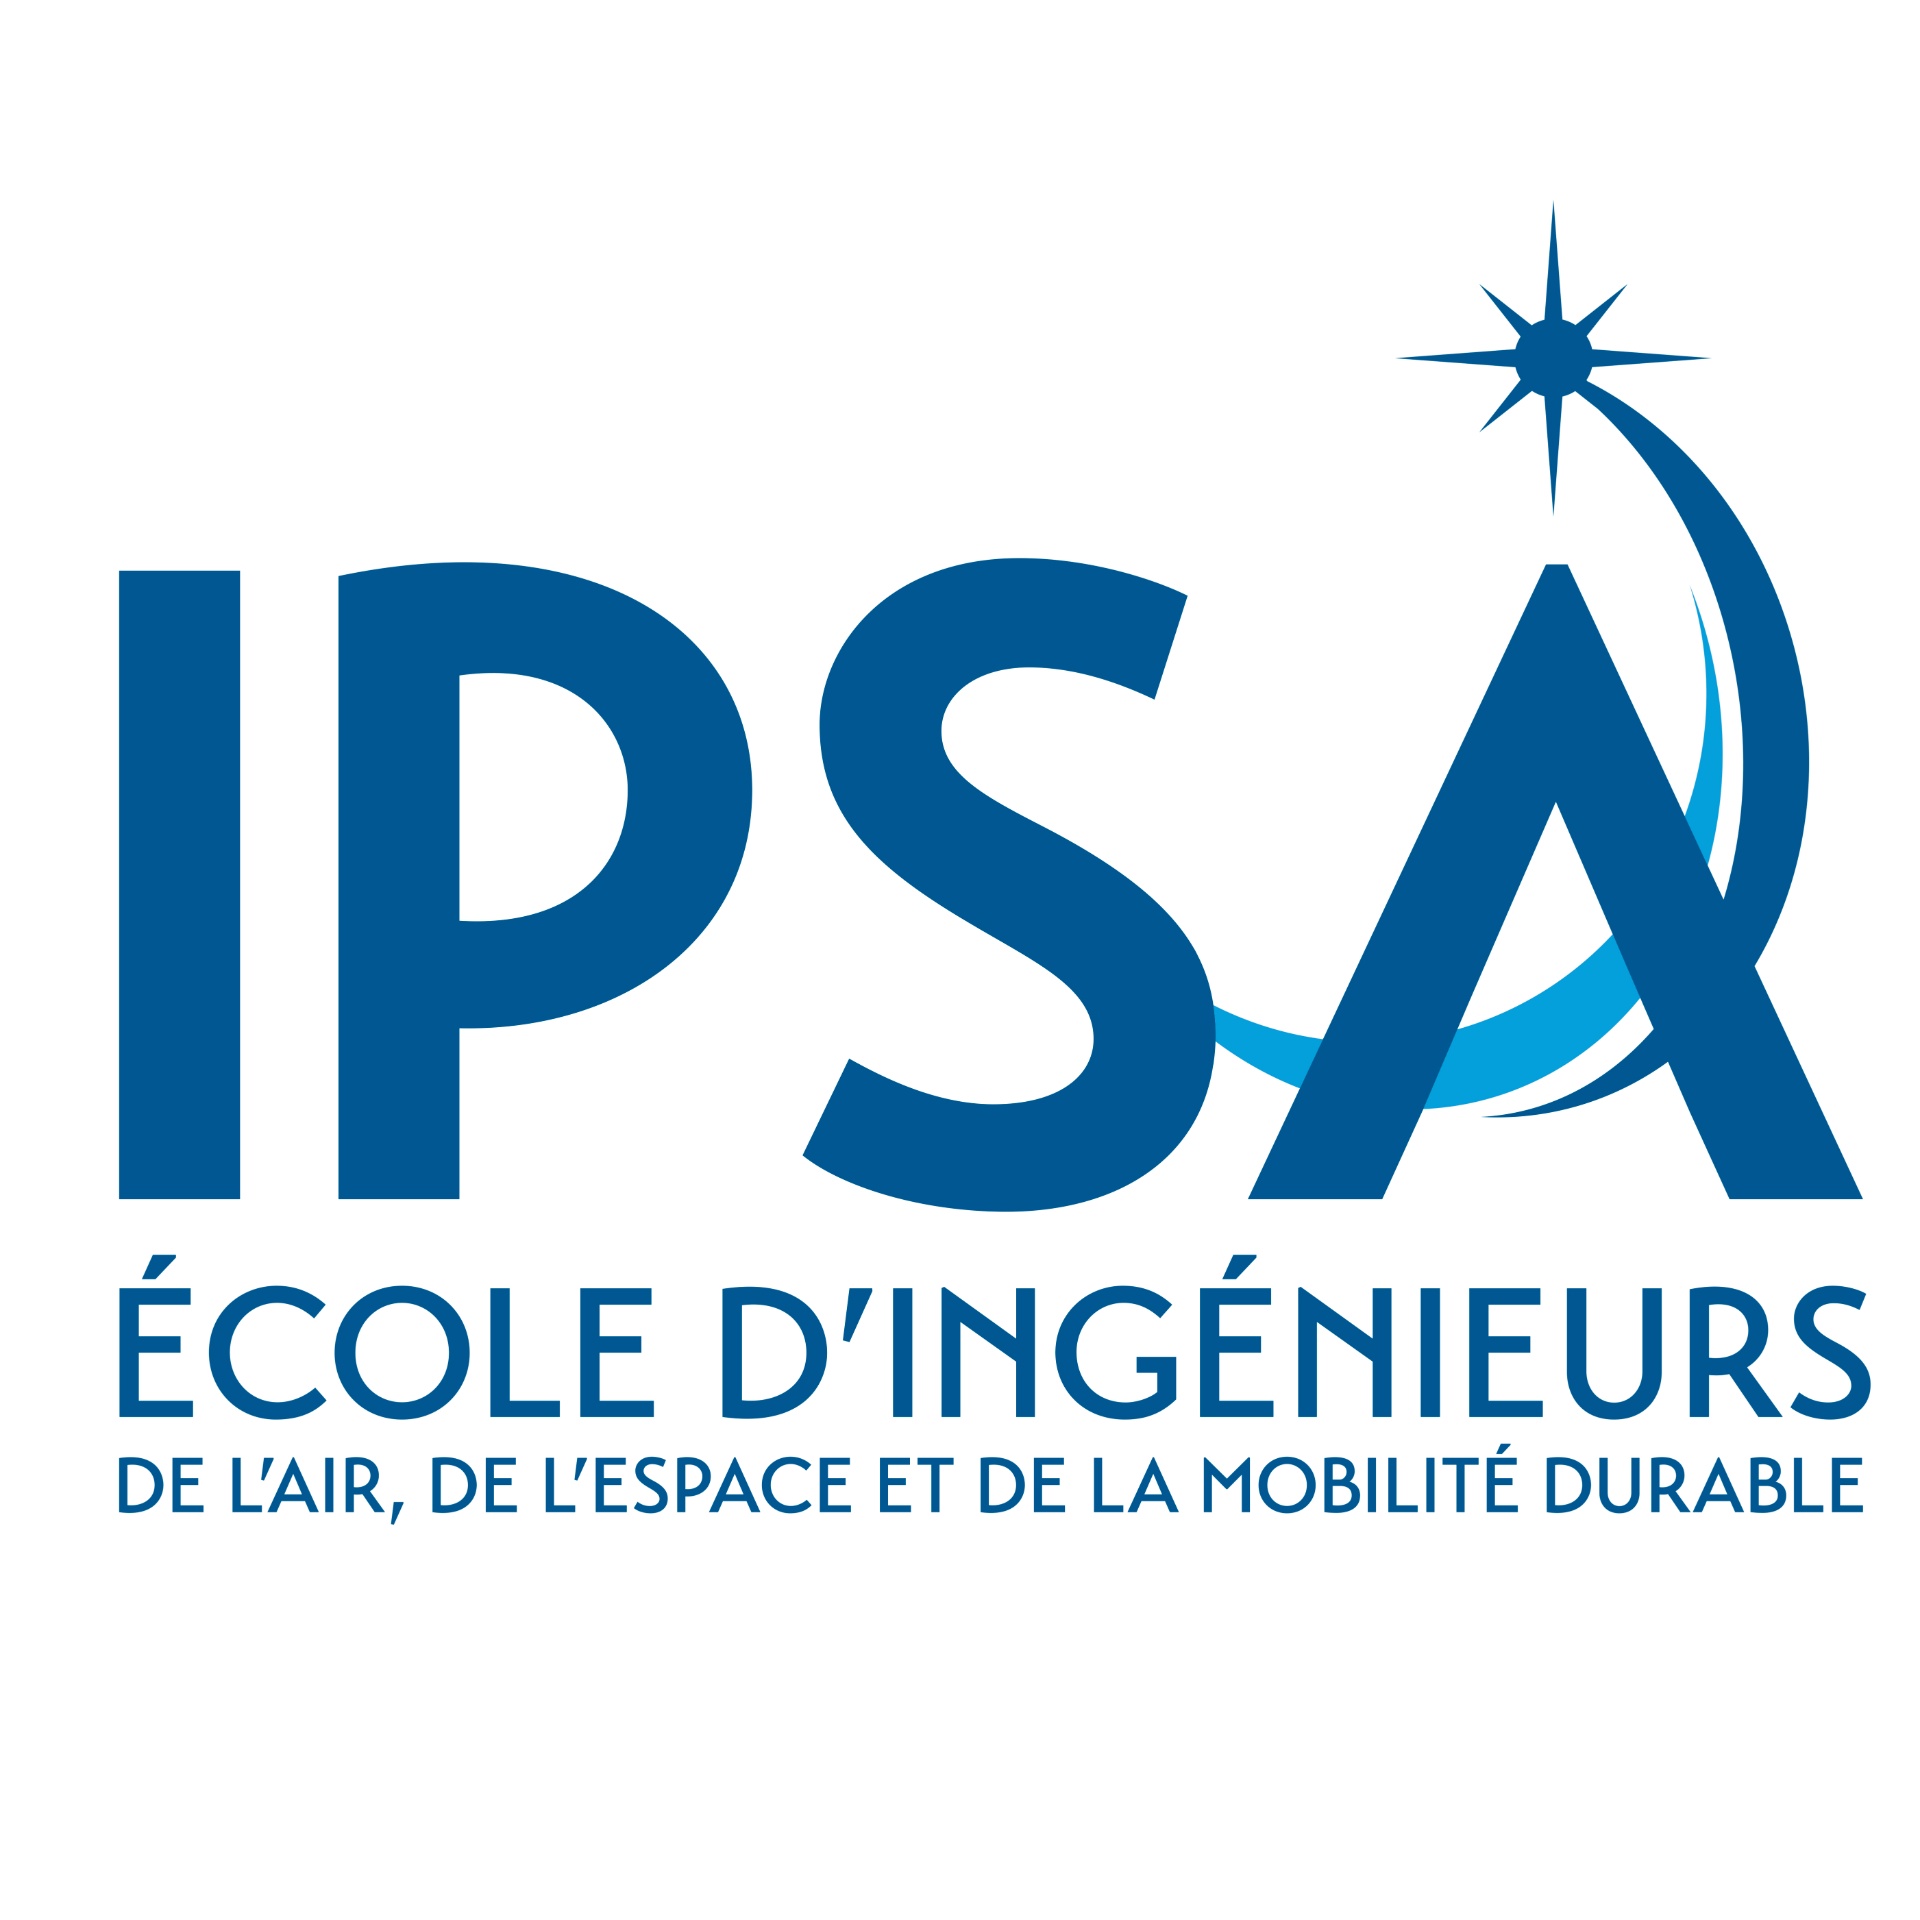 IPSA - Ecole d'ingénieurs aéronautique et spatiale Paris